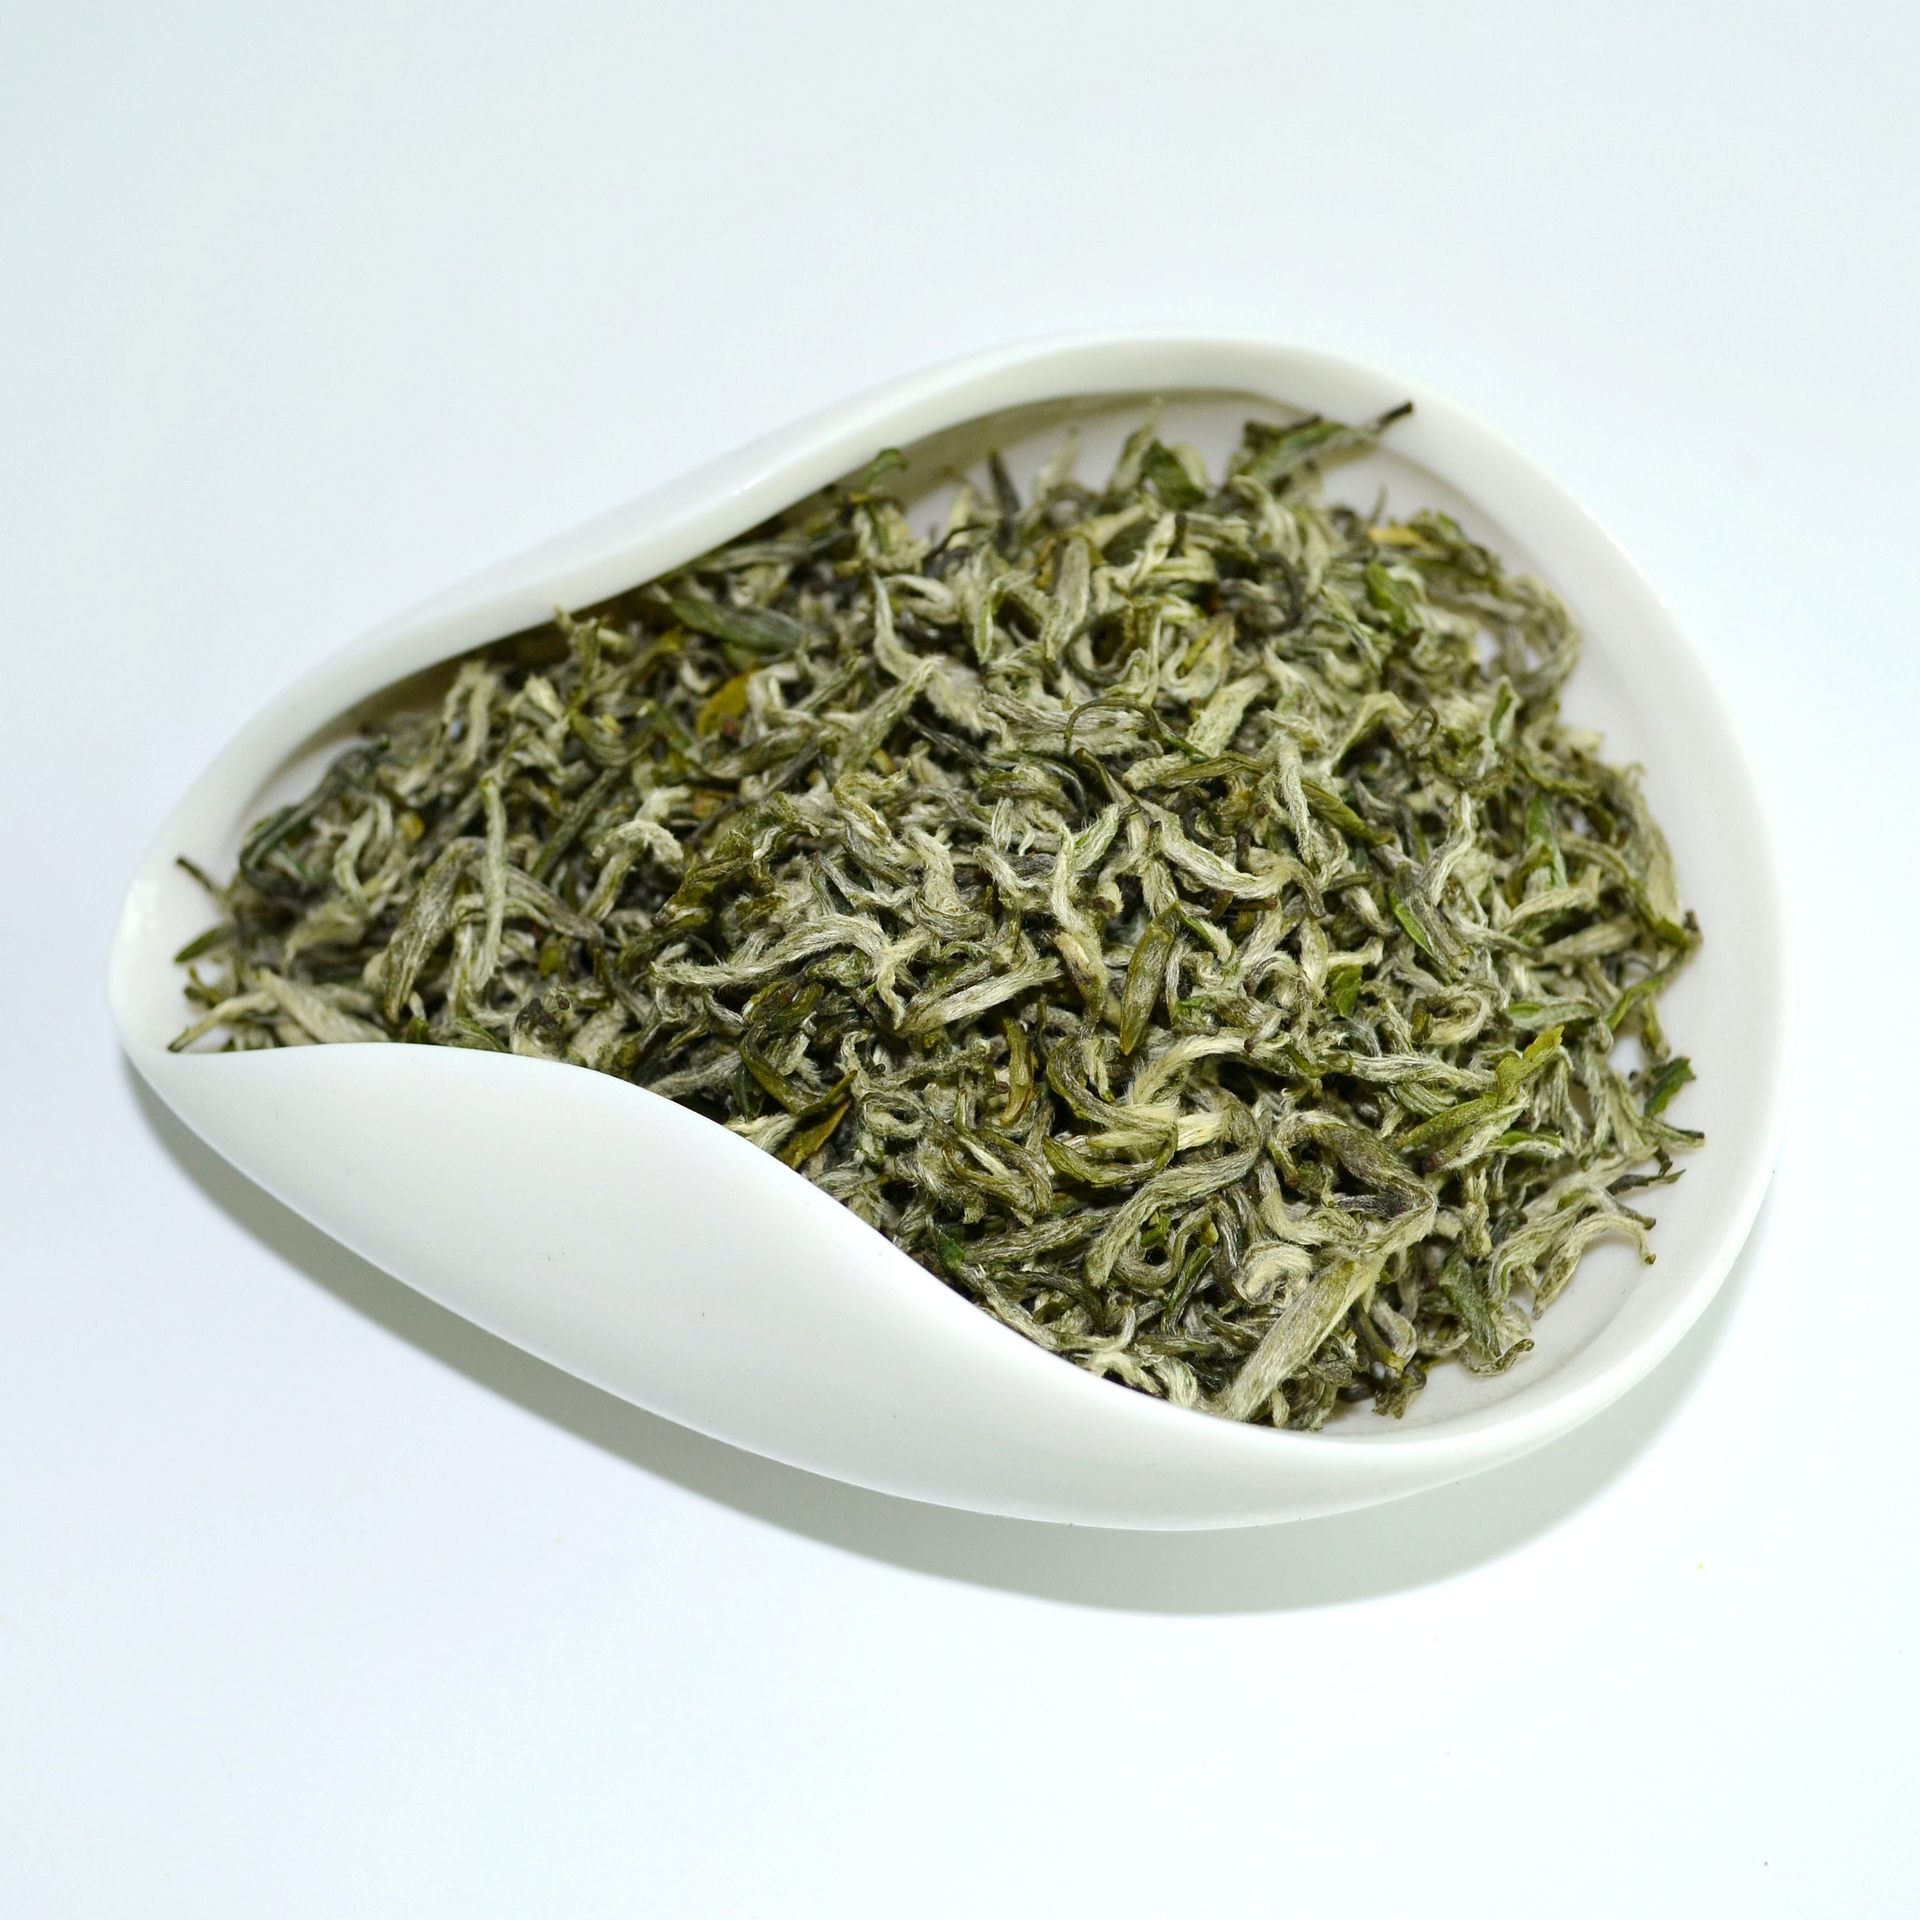 【绿茶】想减肥可以喝绿茶吗